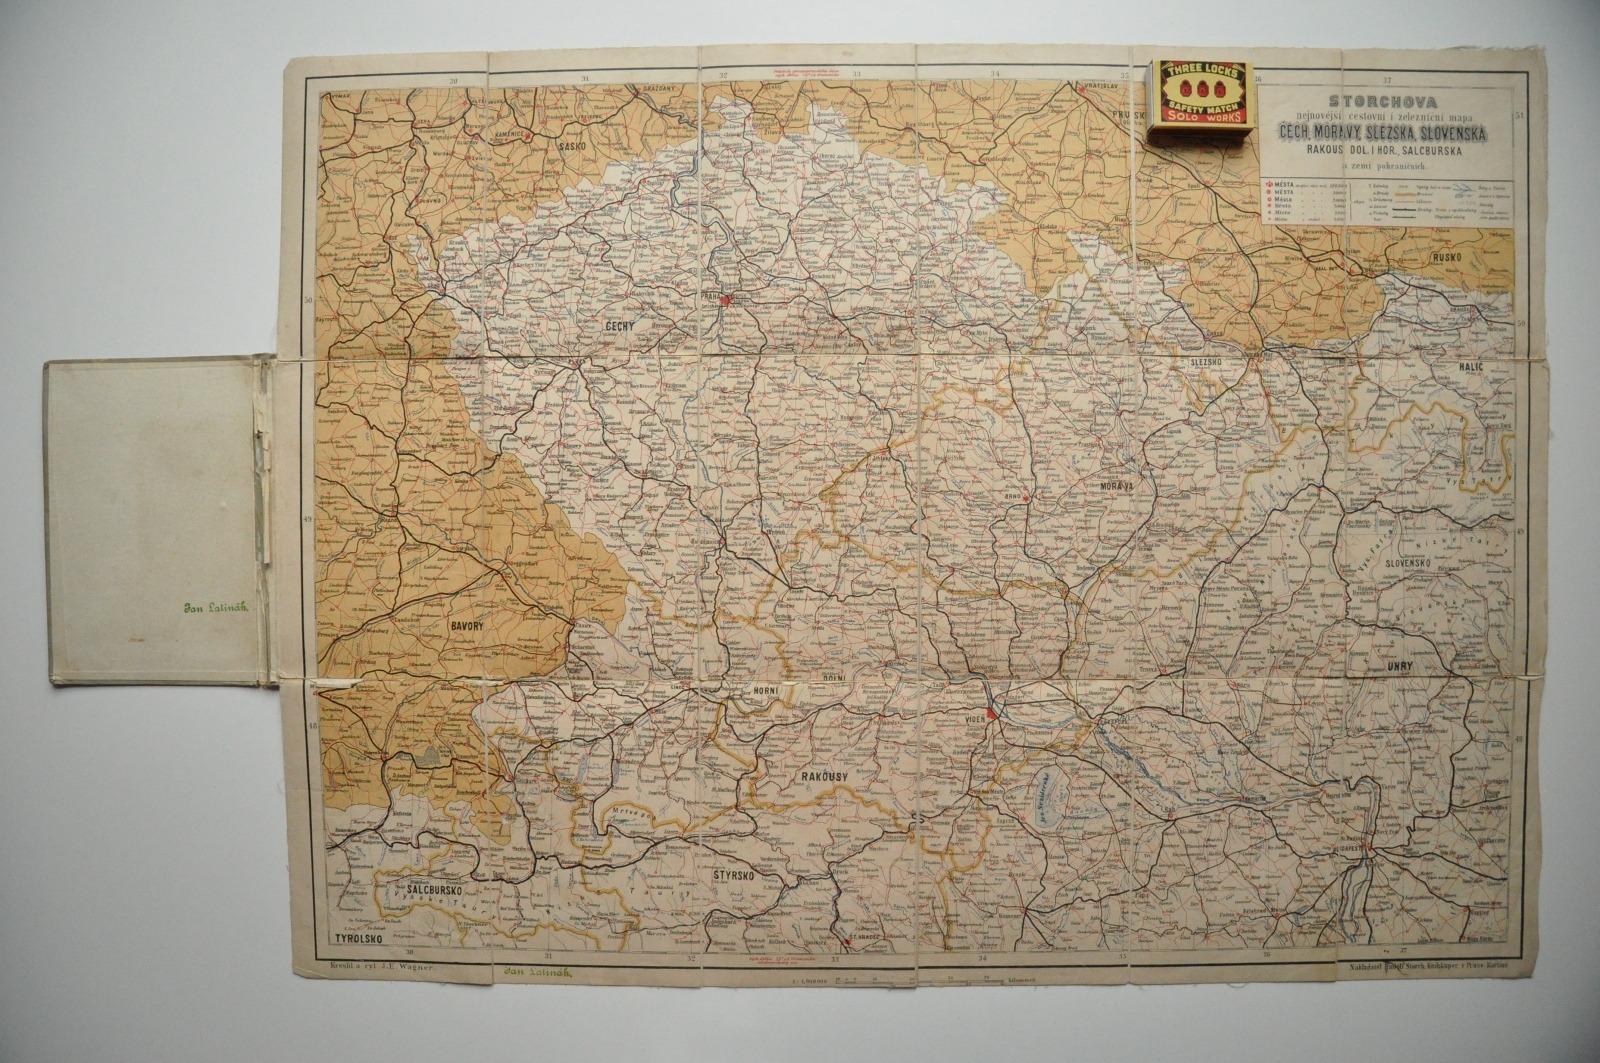 ČECHY MORAVA SLEZSKO SLOVENSKO - CESTOVNÁ A ŽELEZNIČNÁ MAPA - 1910 - Staré mapy a veduty